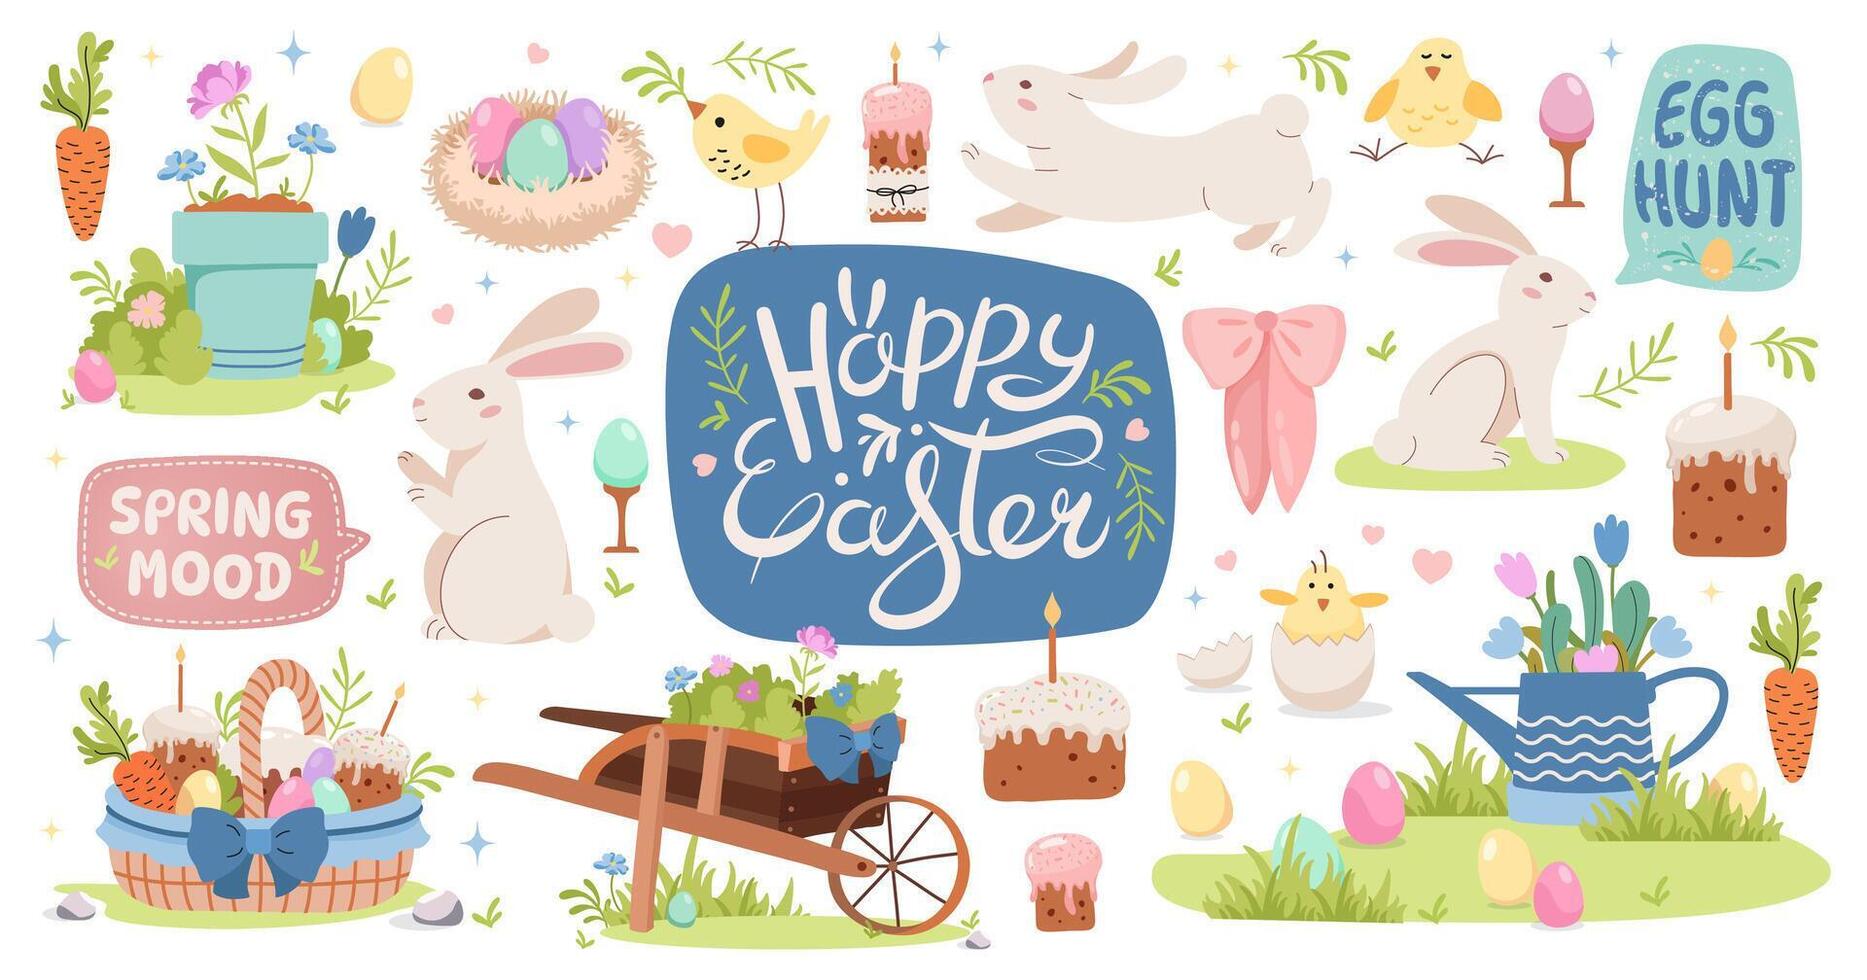 Lycklig påsk tecknad serie djur- karaktär och trädgård element uppsättning. vår påsk kanin, kycklingar, trädgård skottkärra, inlagd blomma, korg med färgad ägg och kaka. hand text. vektor illustration.